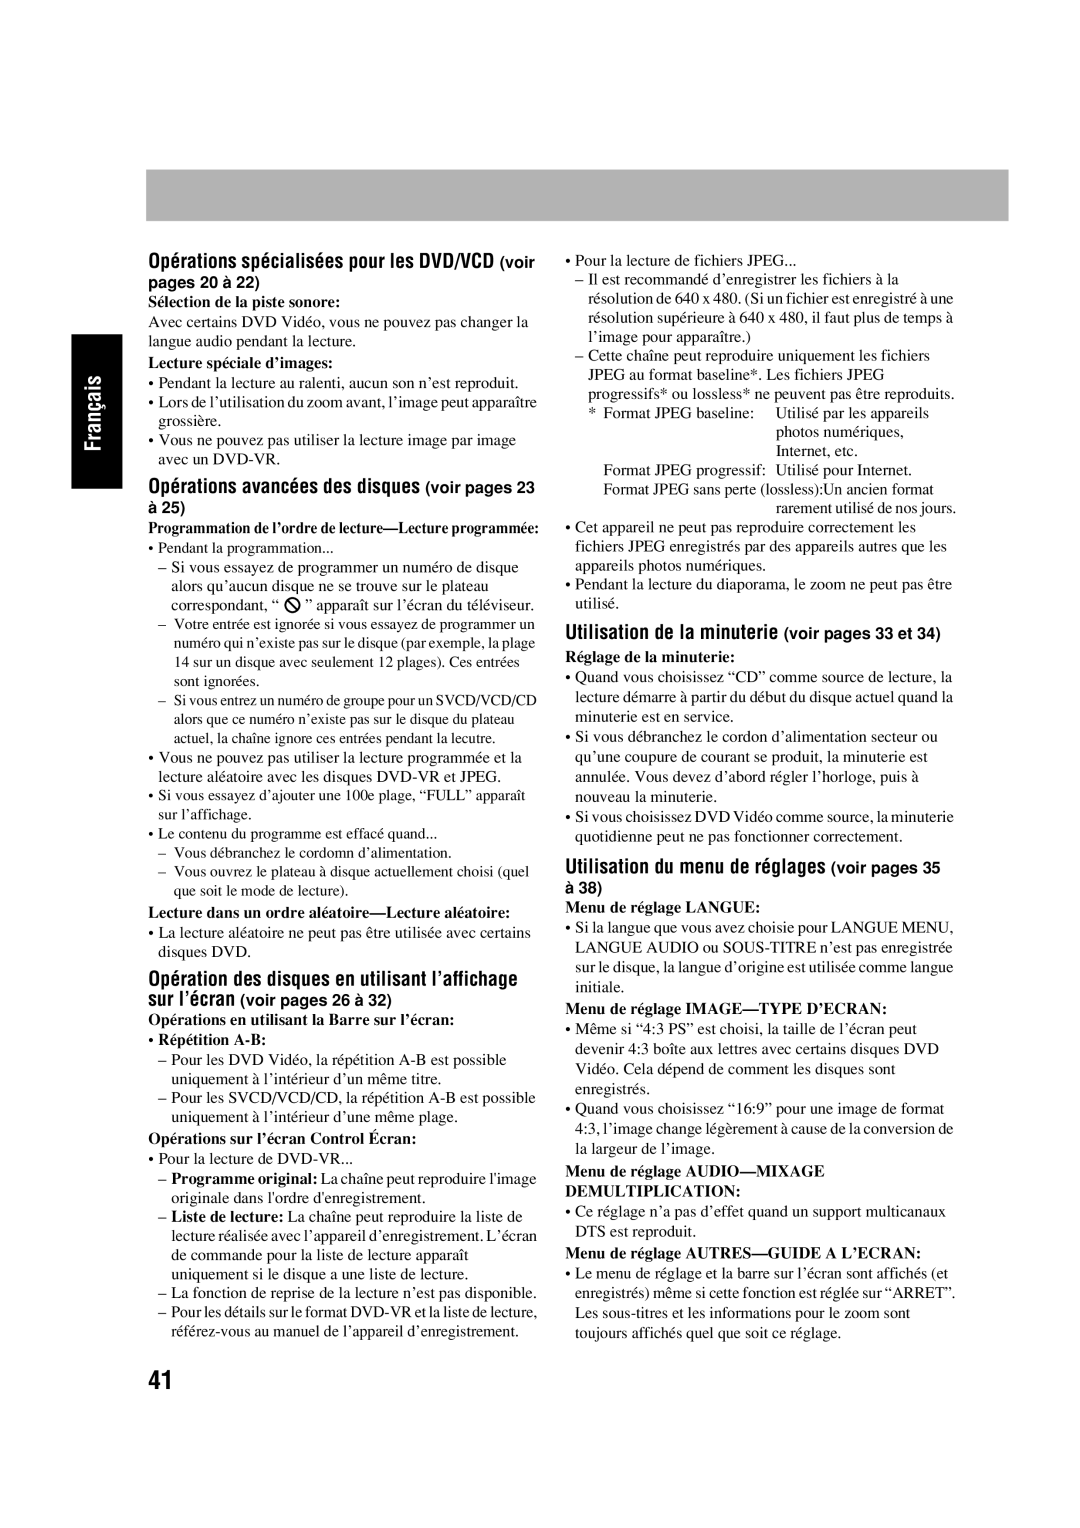 JVC SP-HXD77 manual Utilisation de la minuterie voir pages 33 et, Utilisation du menu de réglages voir pages, pages 20 à 